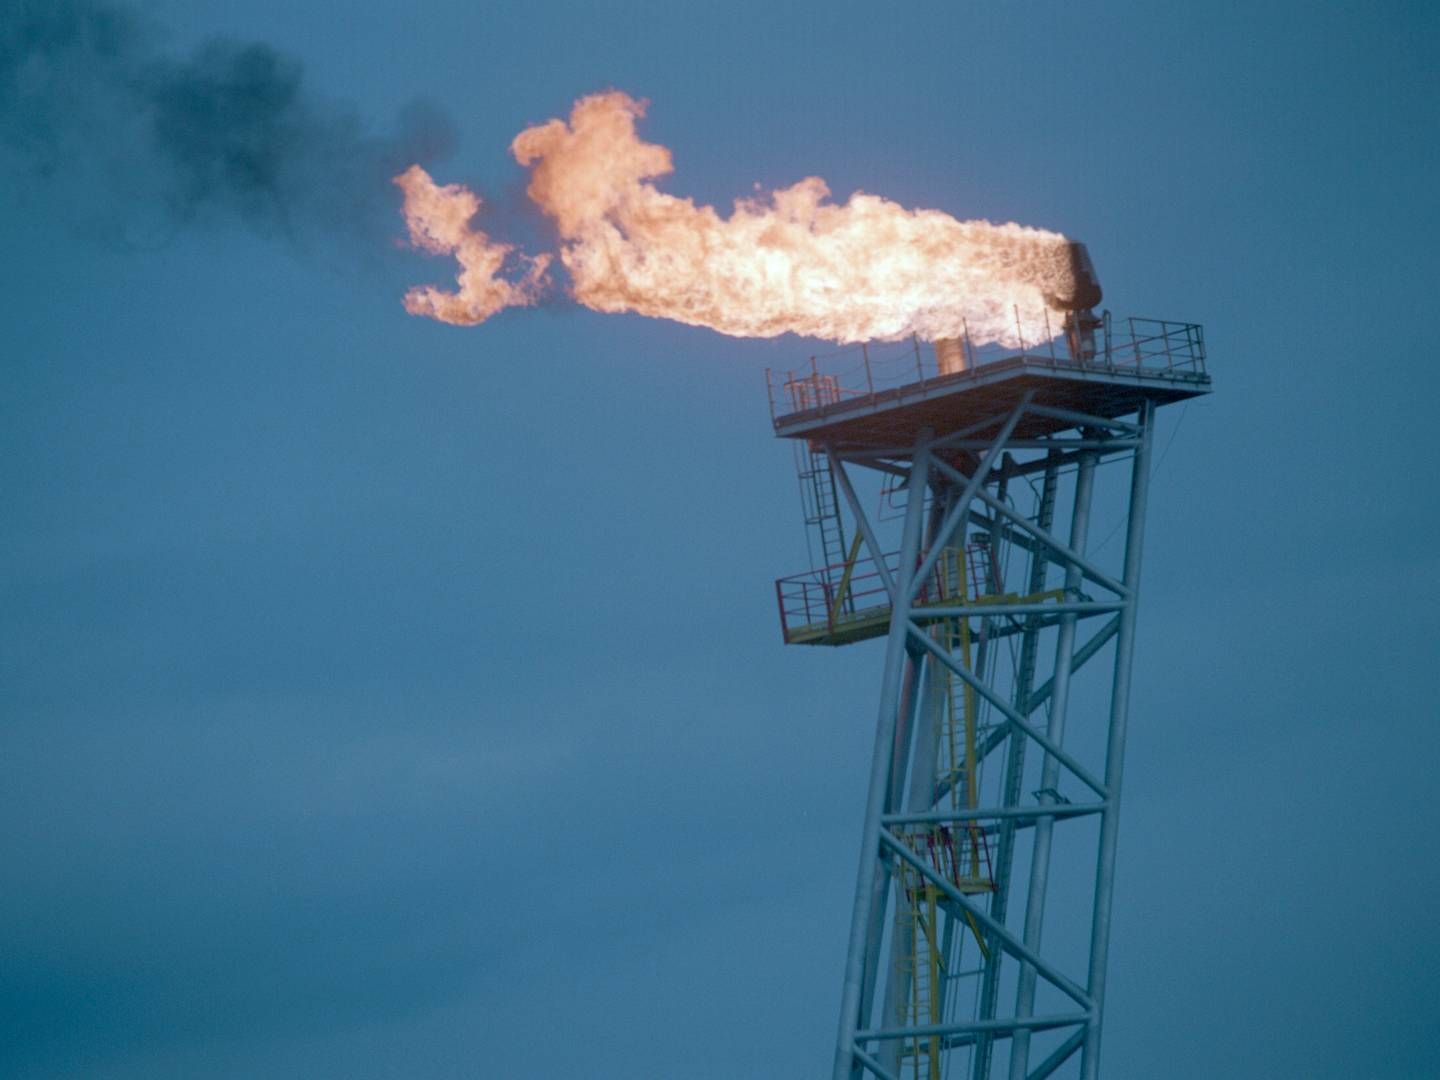 Både eksporten og verdien av råoljen nådde rekordnivåer i april, mens gassinntektene falt. Illustrasjonsfoto. | Photo: Jon Eeg/NTB